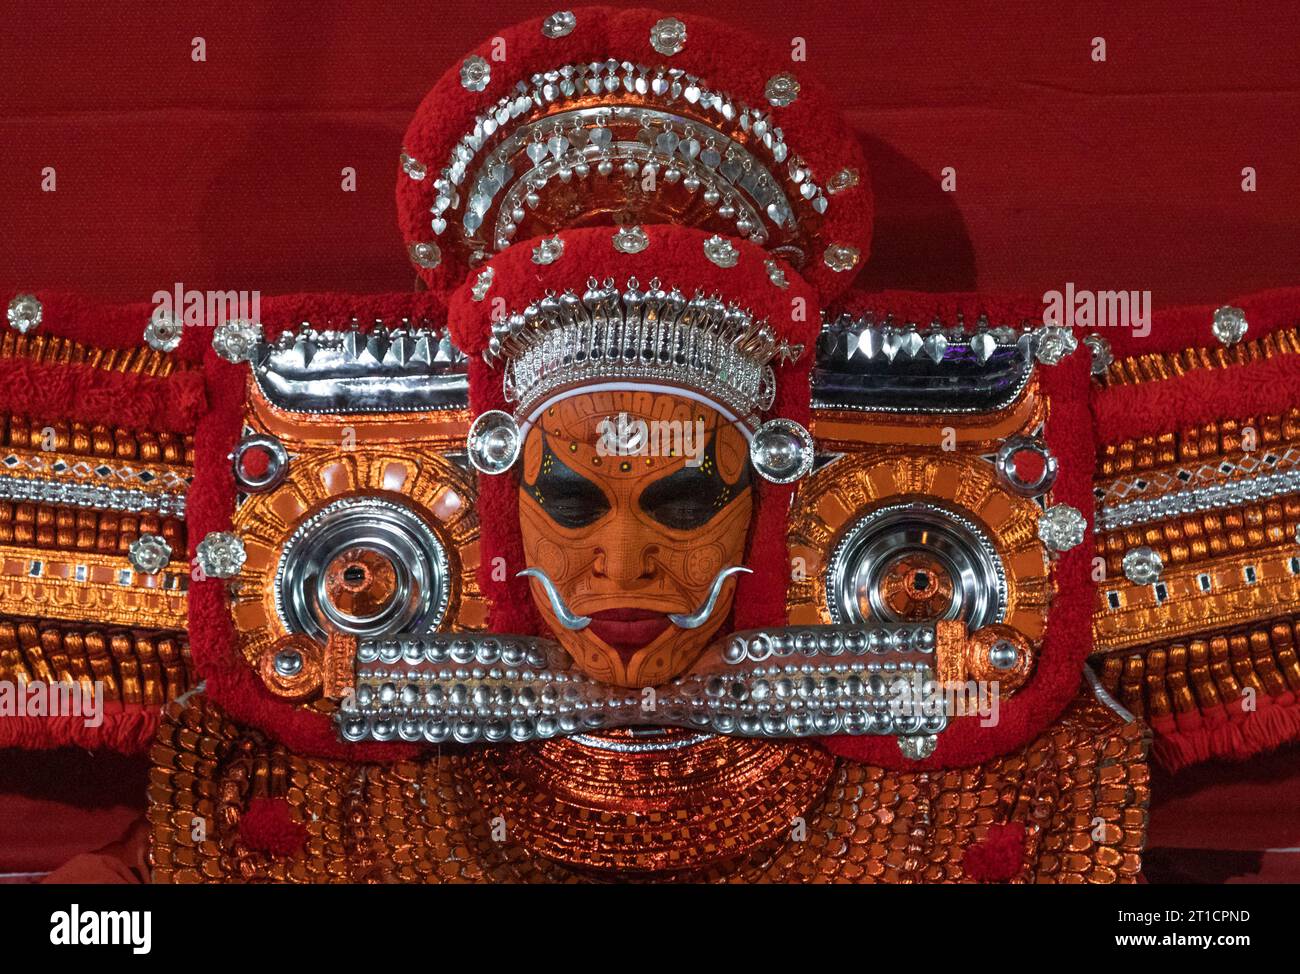 26 ottobre 2019, Kannur, Kerala. Un artista Theyam esegue il rituale durante il festival del tempio a Kannur. È una forma di arte popolare ritualistica di Ker Foto Stock